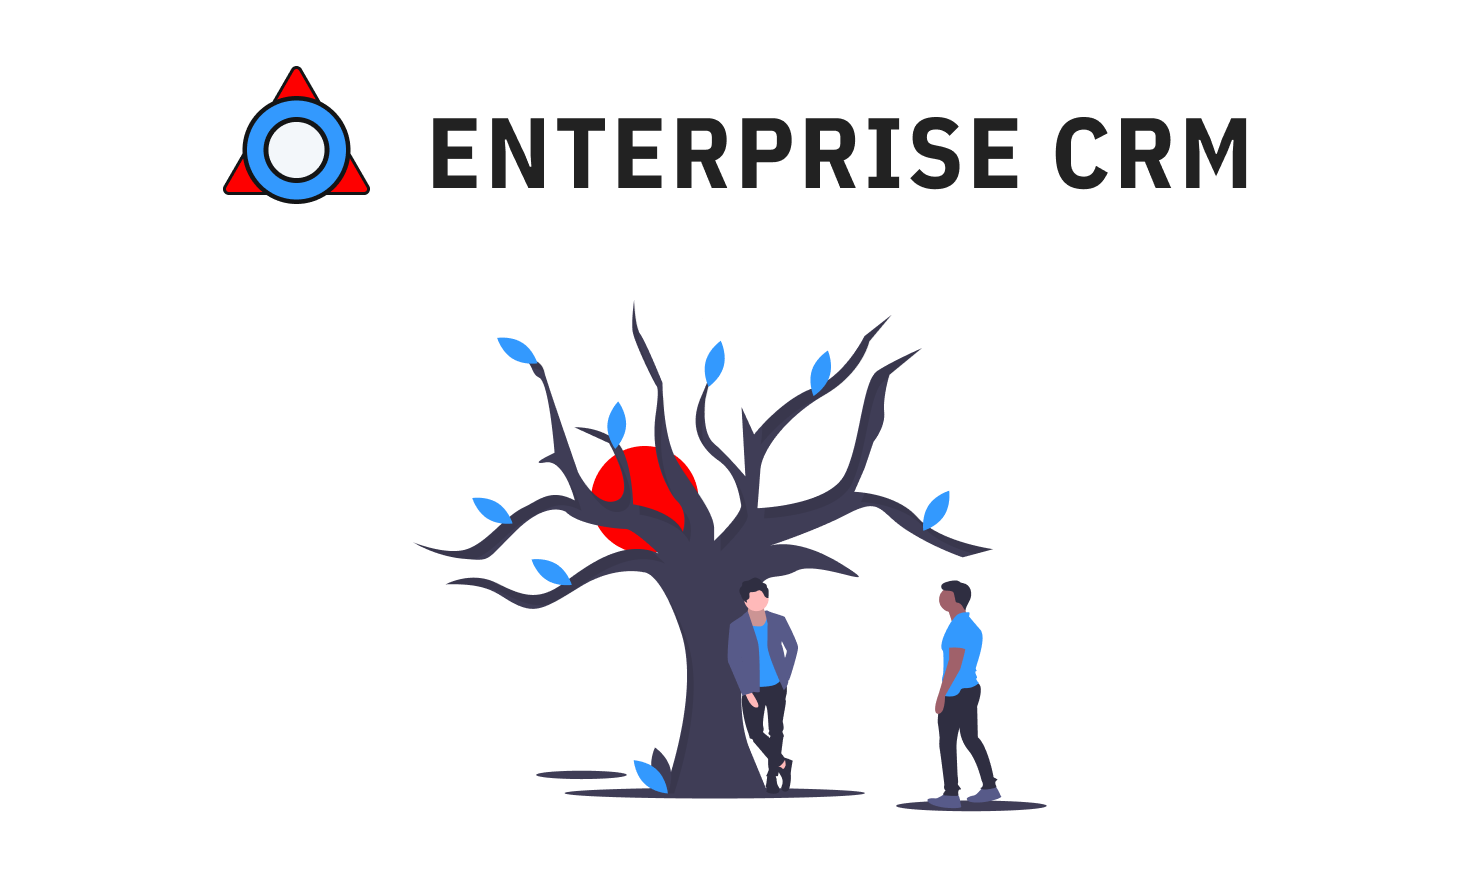 Enterprise C R M